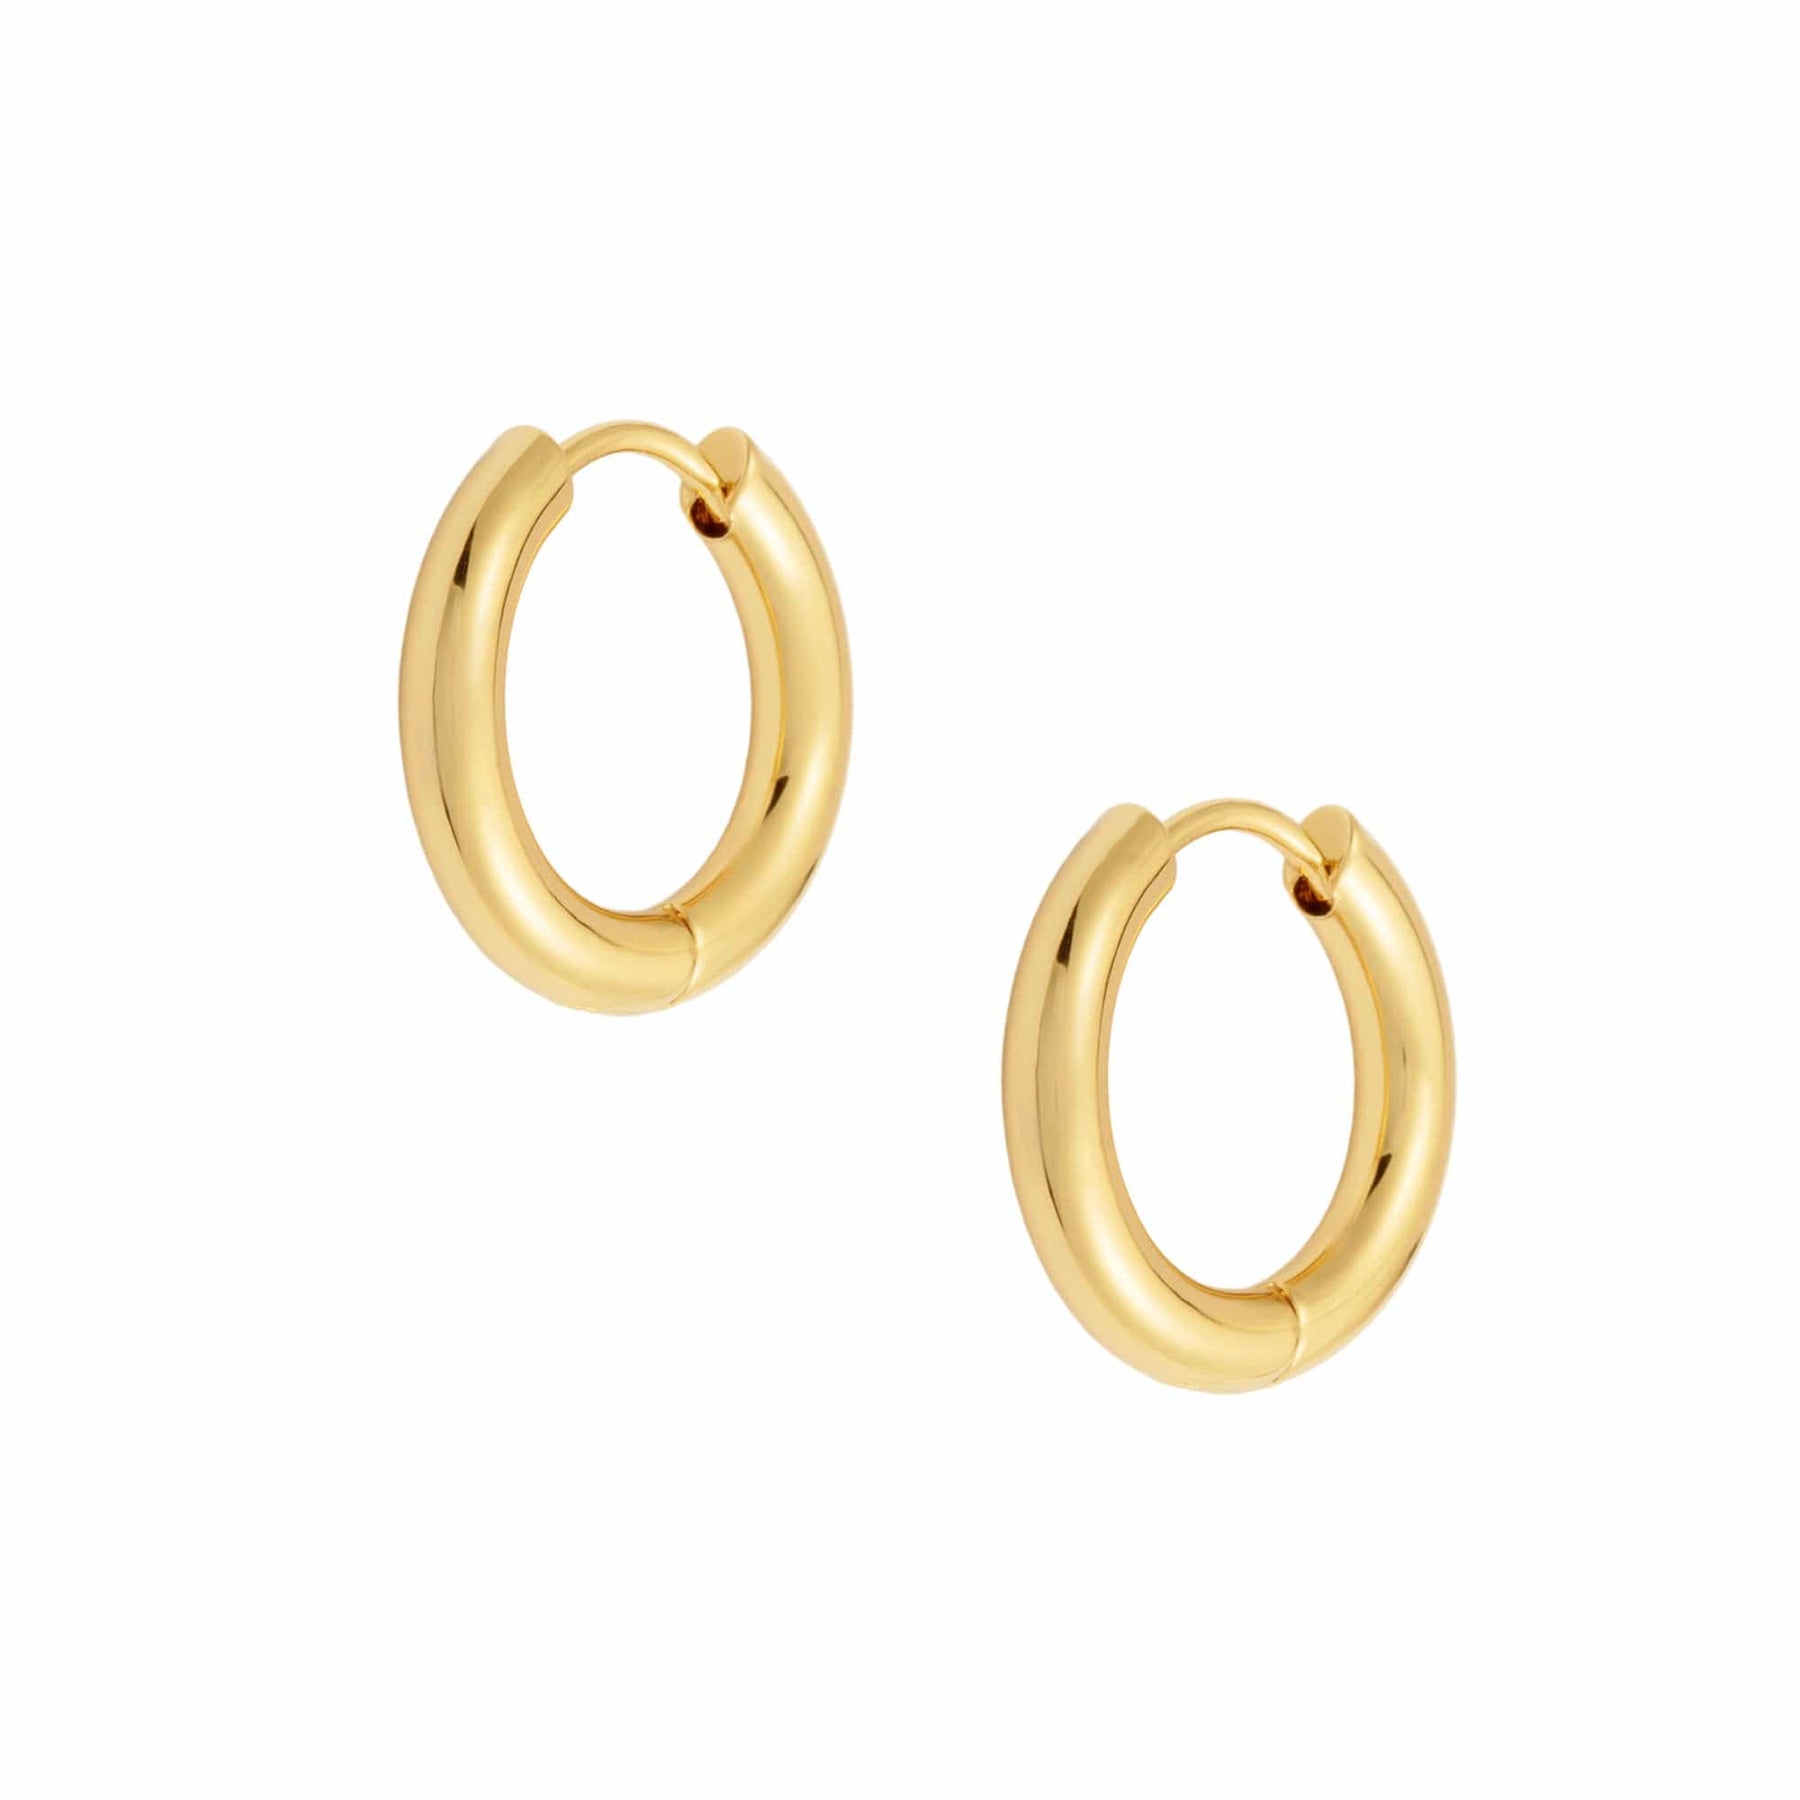 BohoMoon Stainless Steel Riley Hoop Earrings Gold / 12mm